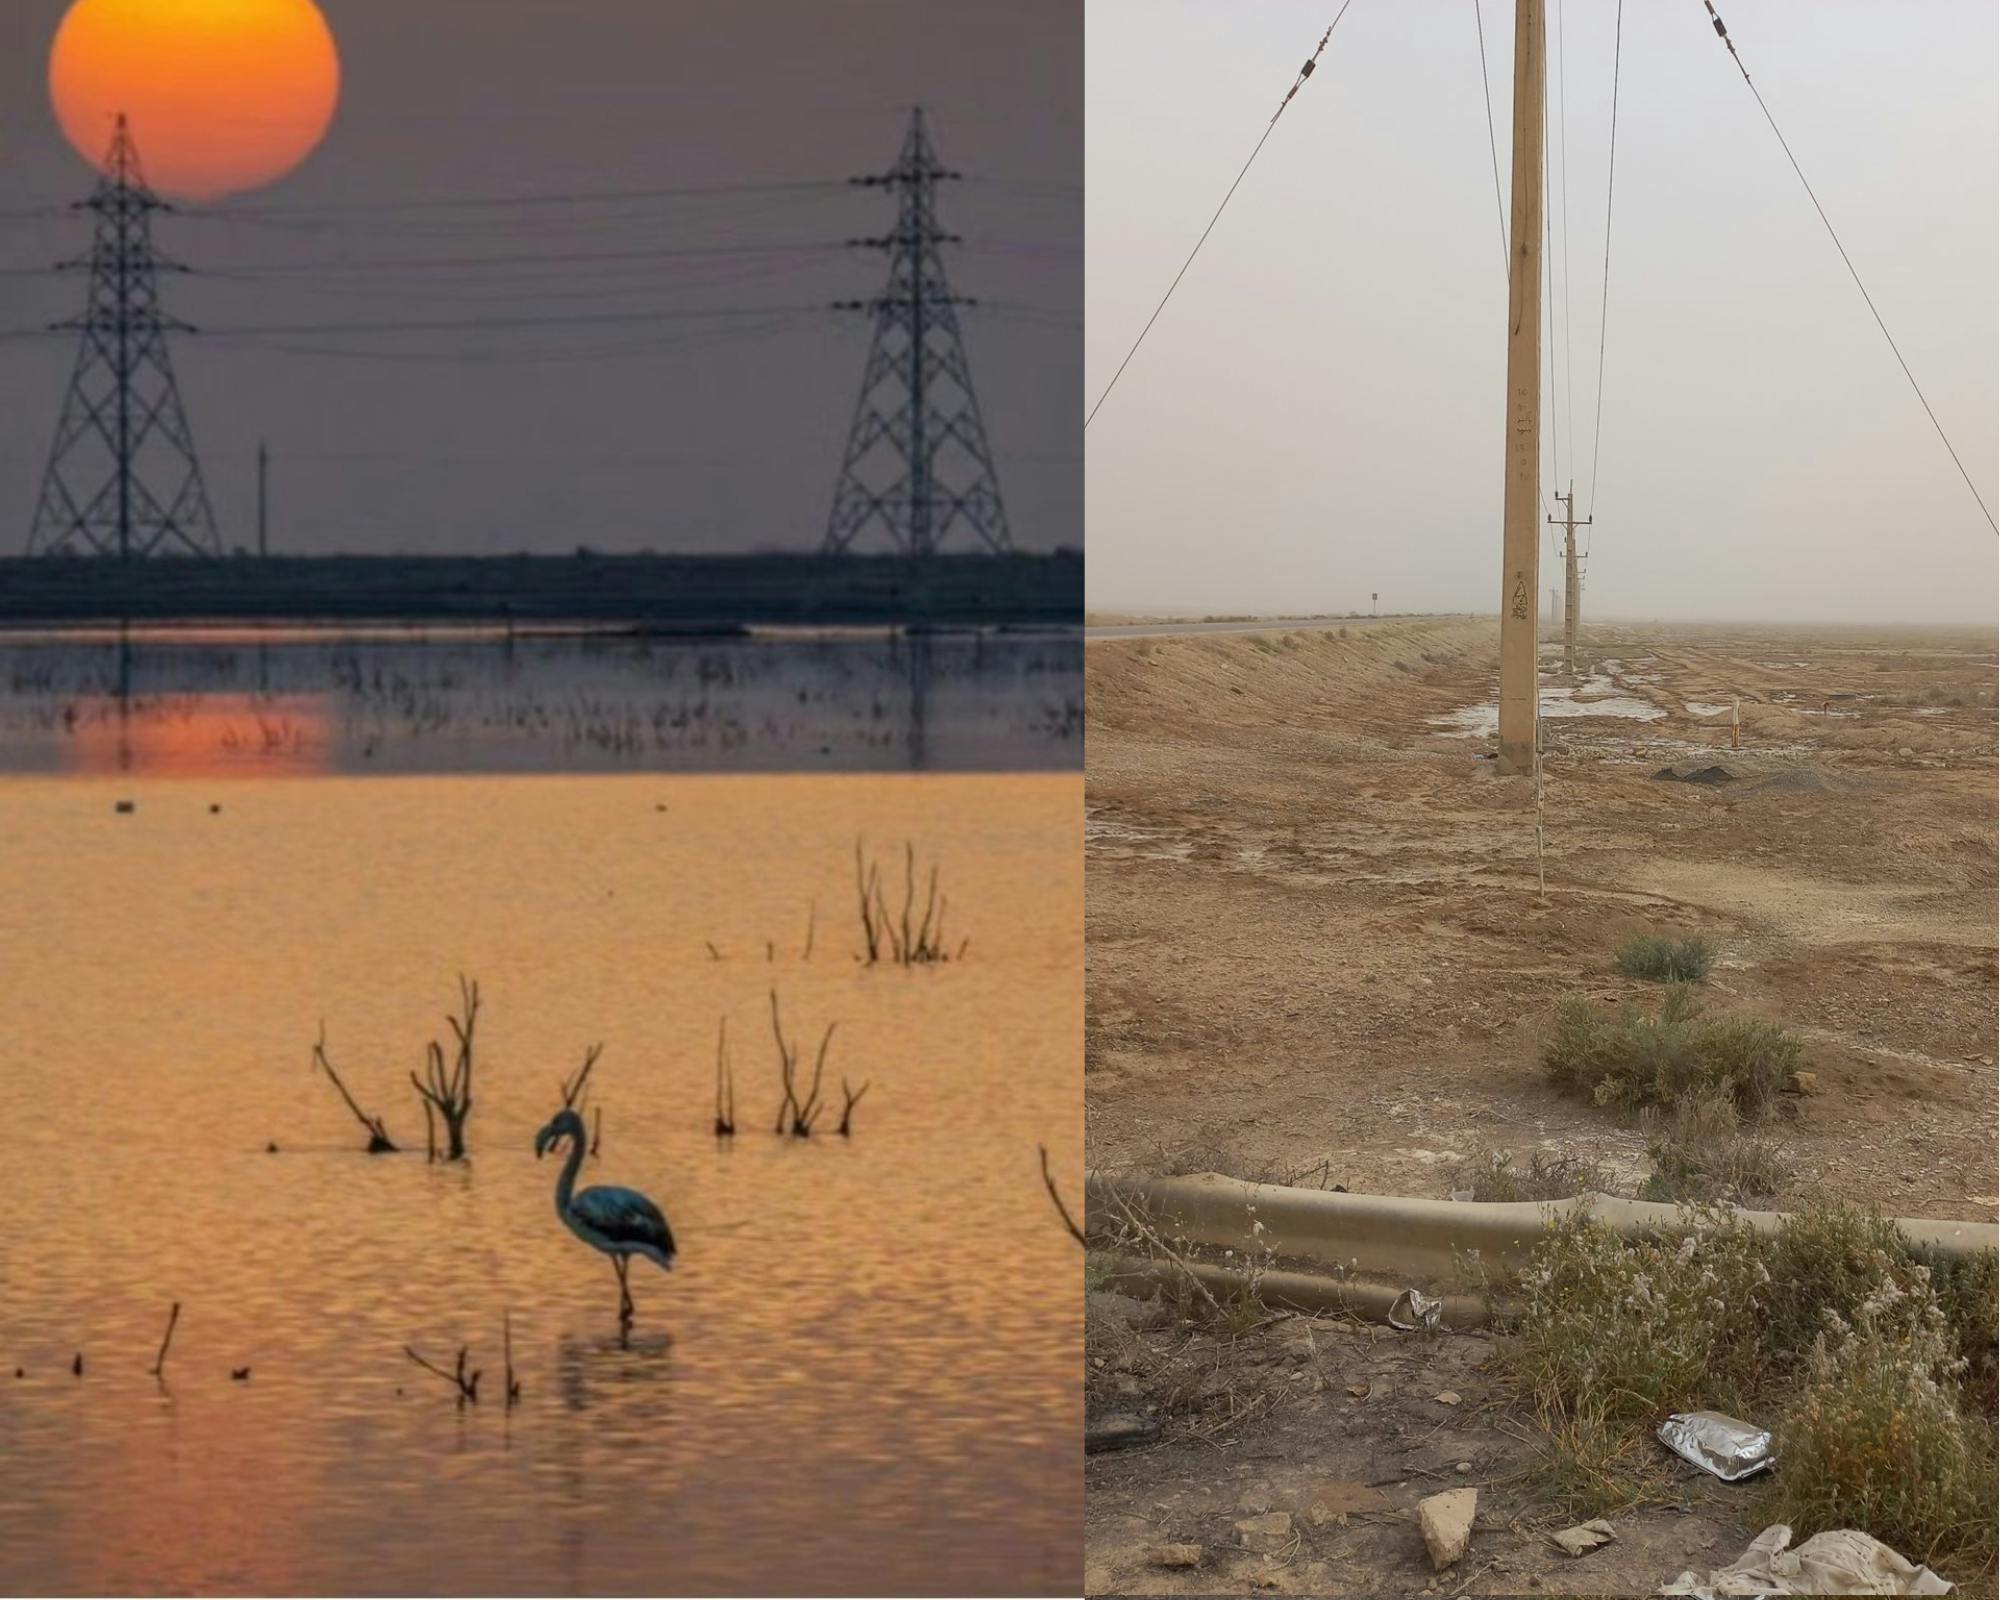 دو تصویر از لیدا آشتیانی که در ایکس منتشر شده‌اند، تفاوت حضور نفت در هورالعظیم را نشان می‌دهد: چاه‌های نفت می‌آیند و تالاب به صحرا تبدیل می‌شود.